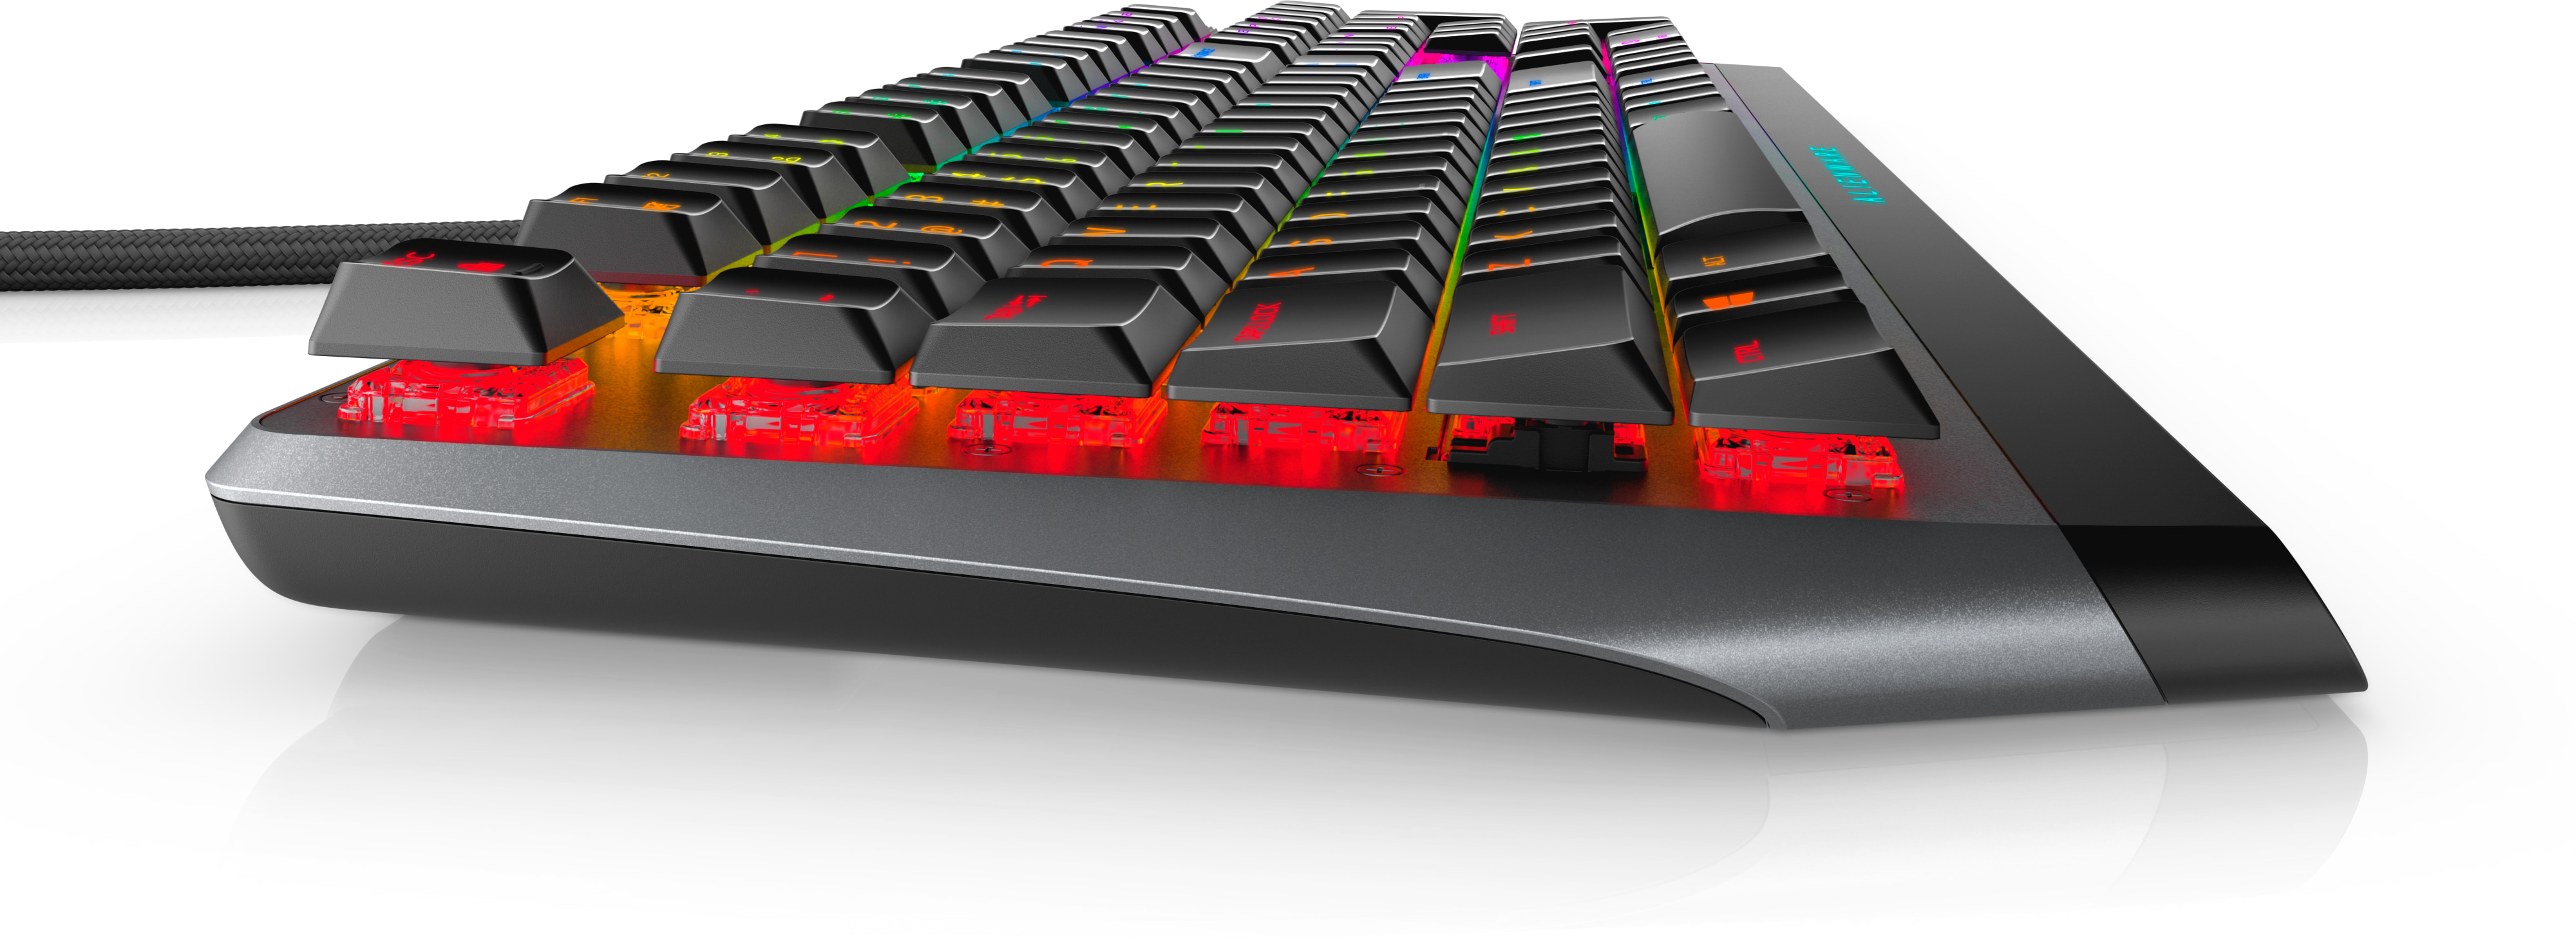 smag komme til syne mørkere Alienware RGB mekanisk gaming-tastatur i lav profil: AW510K | Dell Danmark